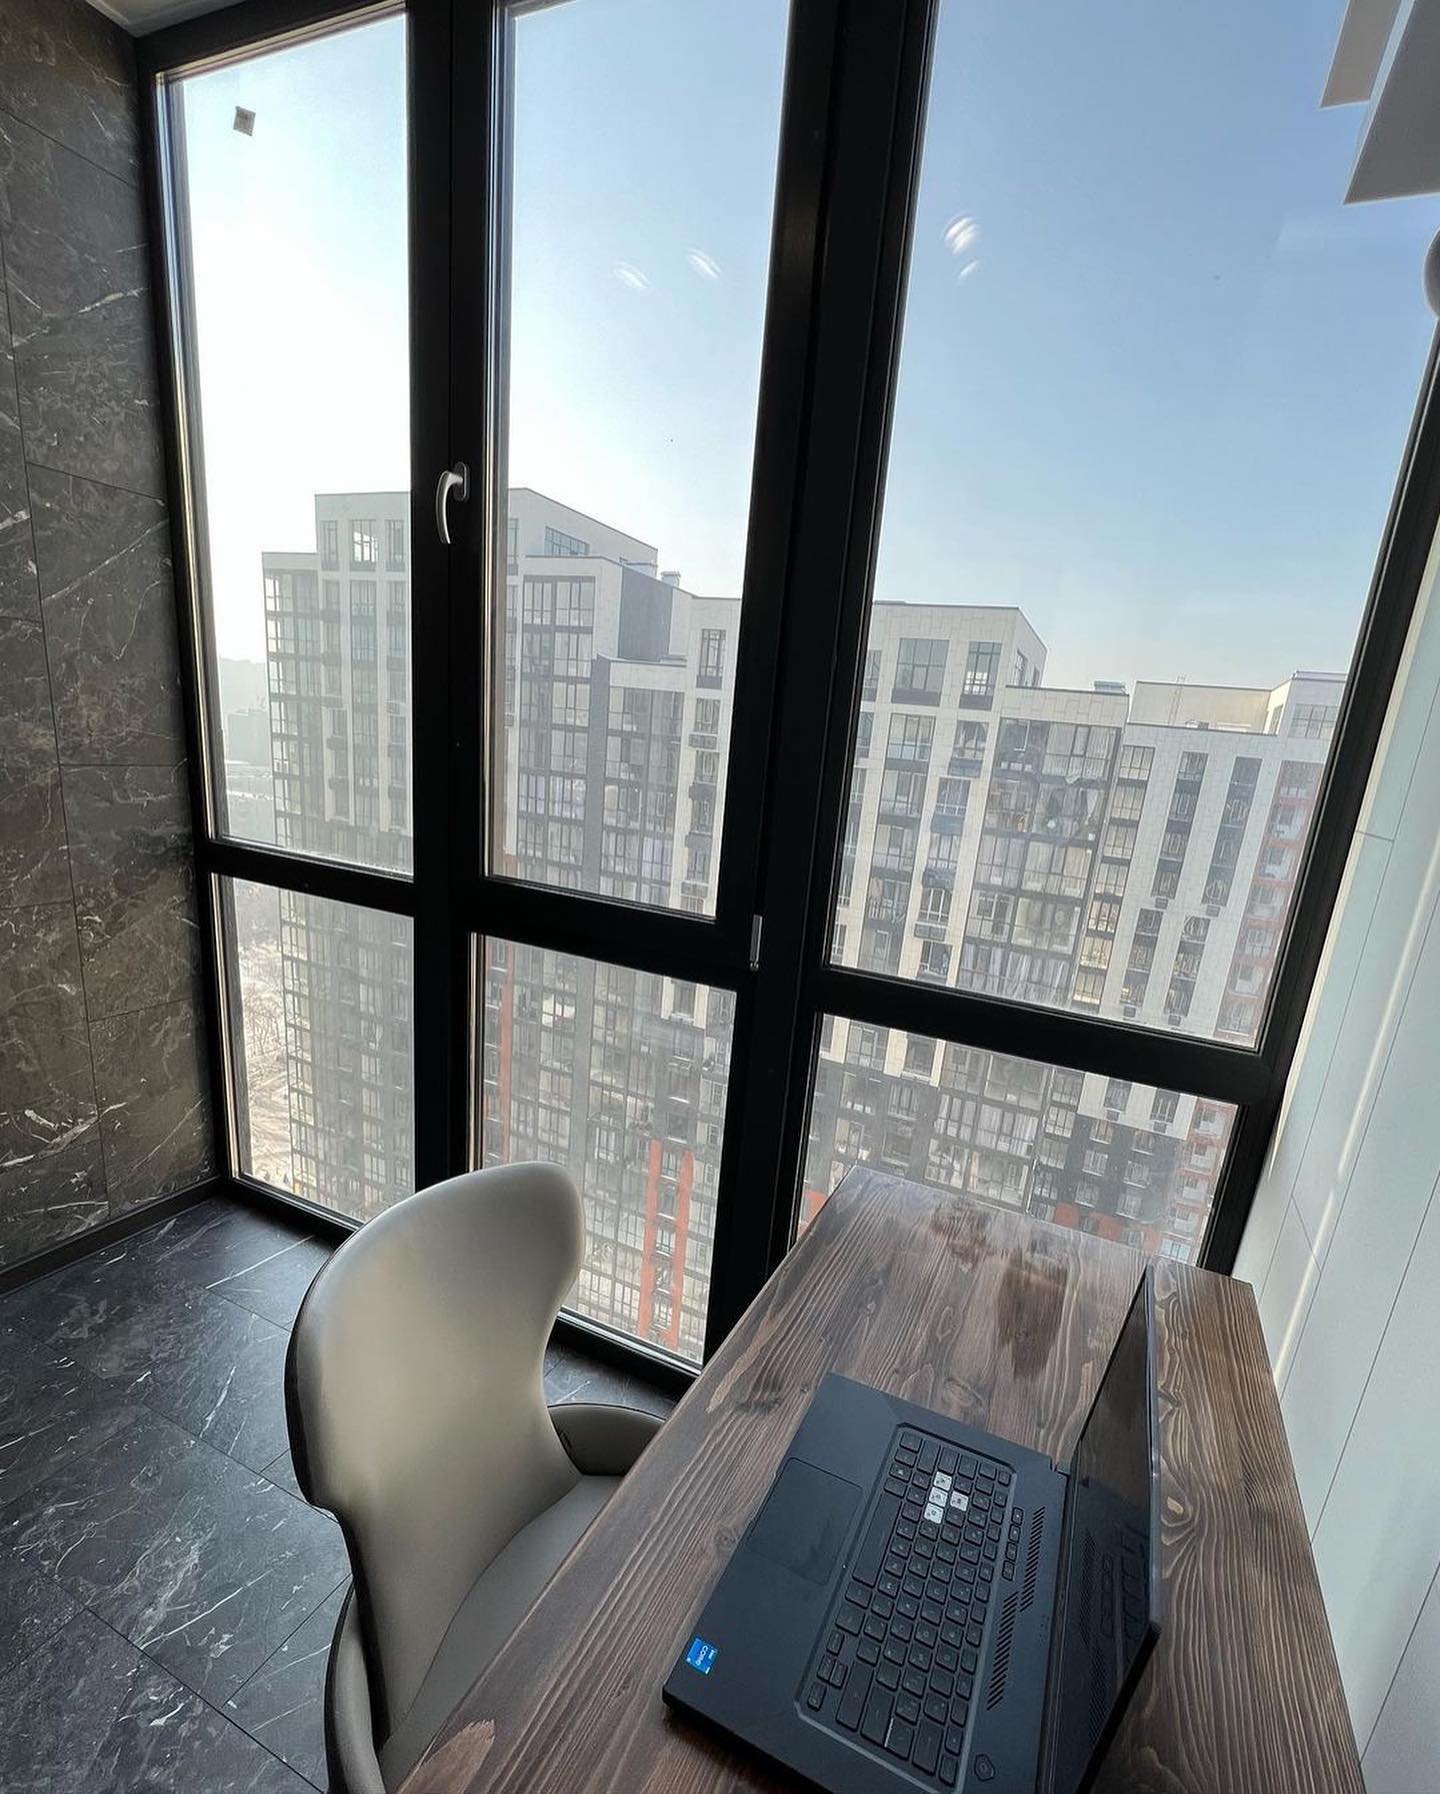 Кабинет на балконе в многоэтажке с панорамным видом. Дизайн и реализация от компании КАКСВОИМ